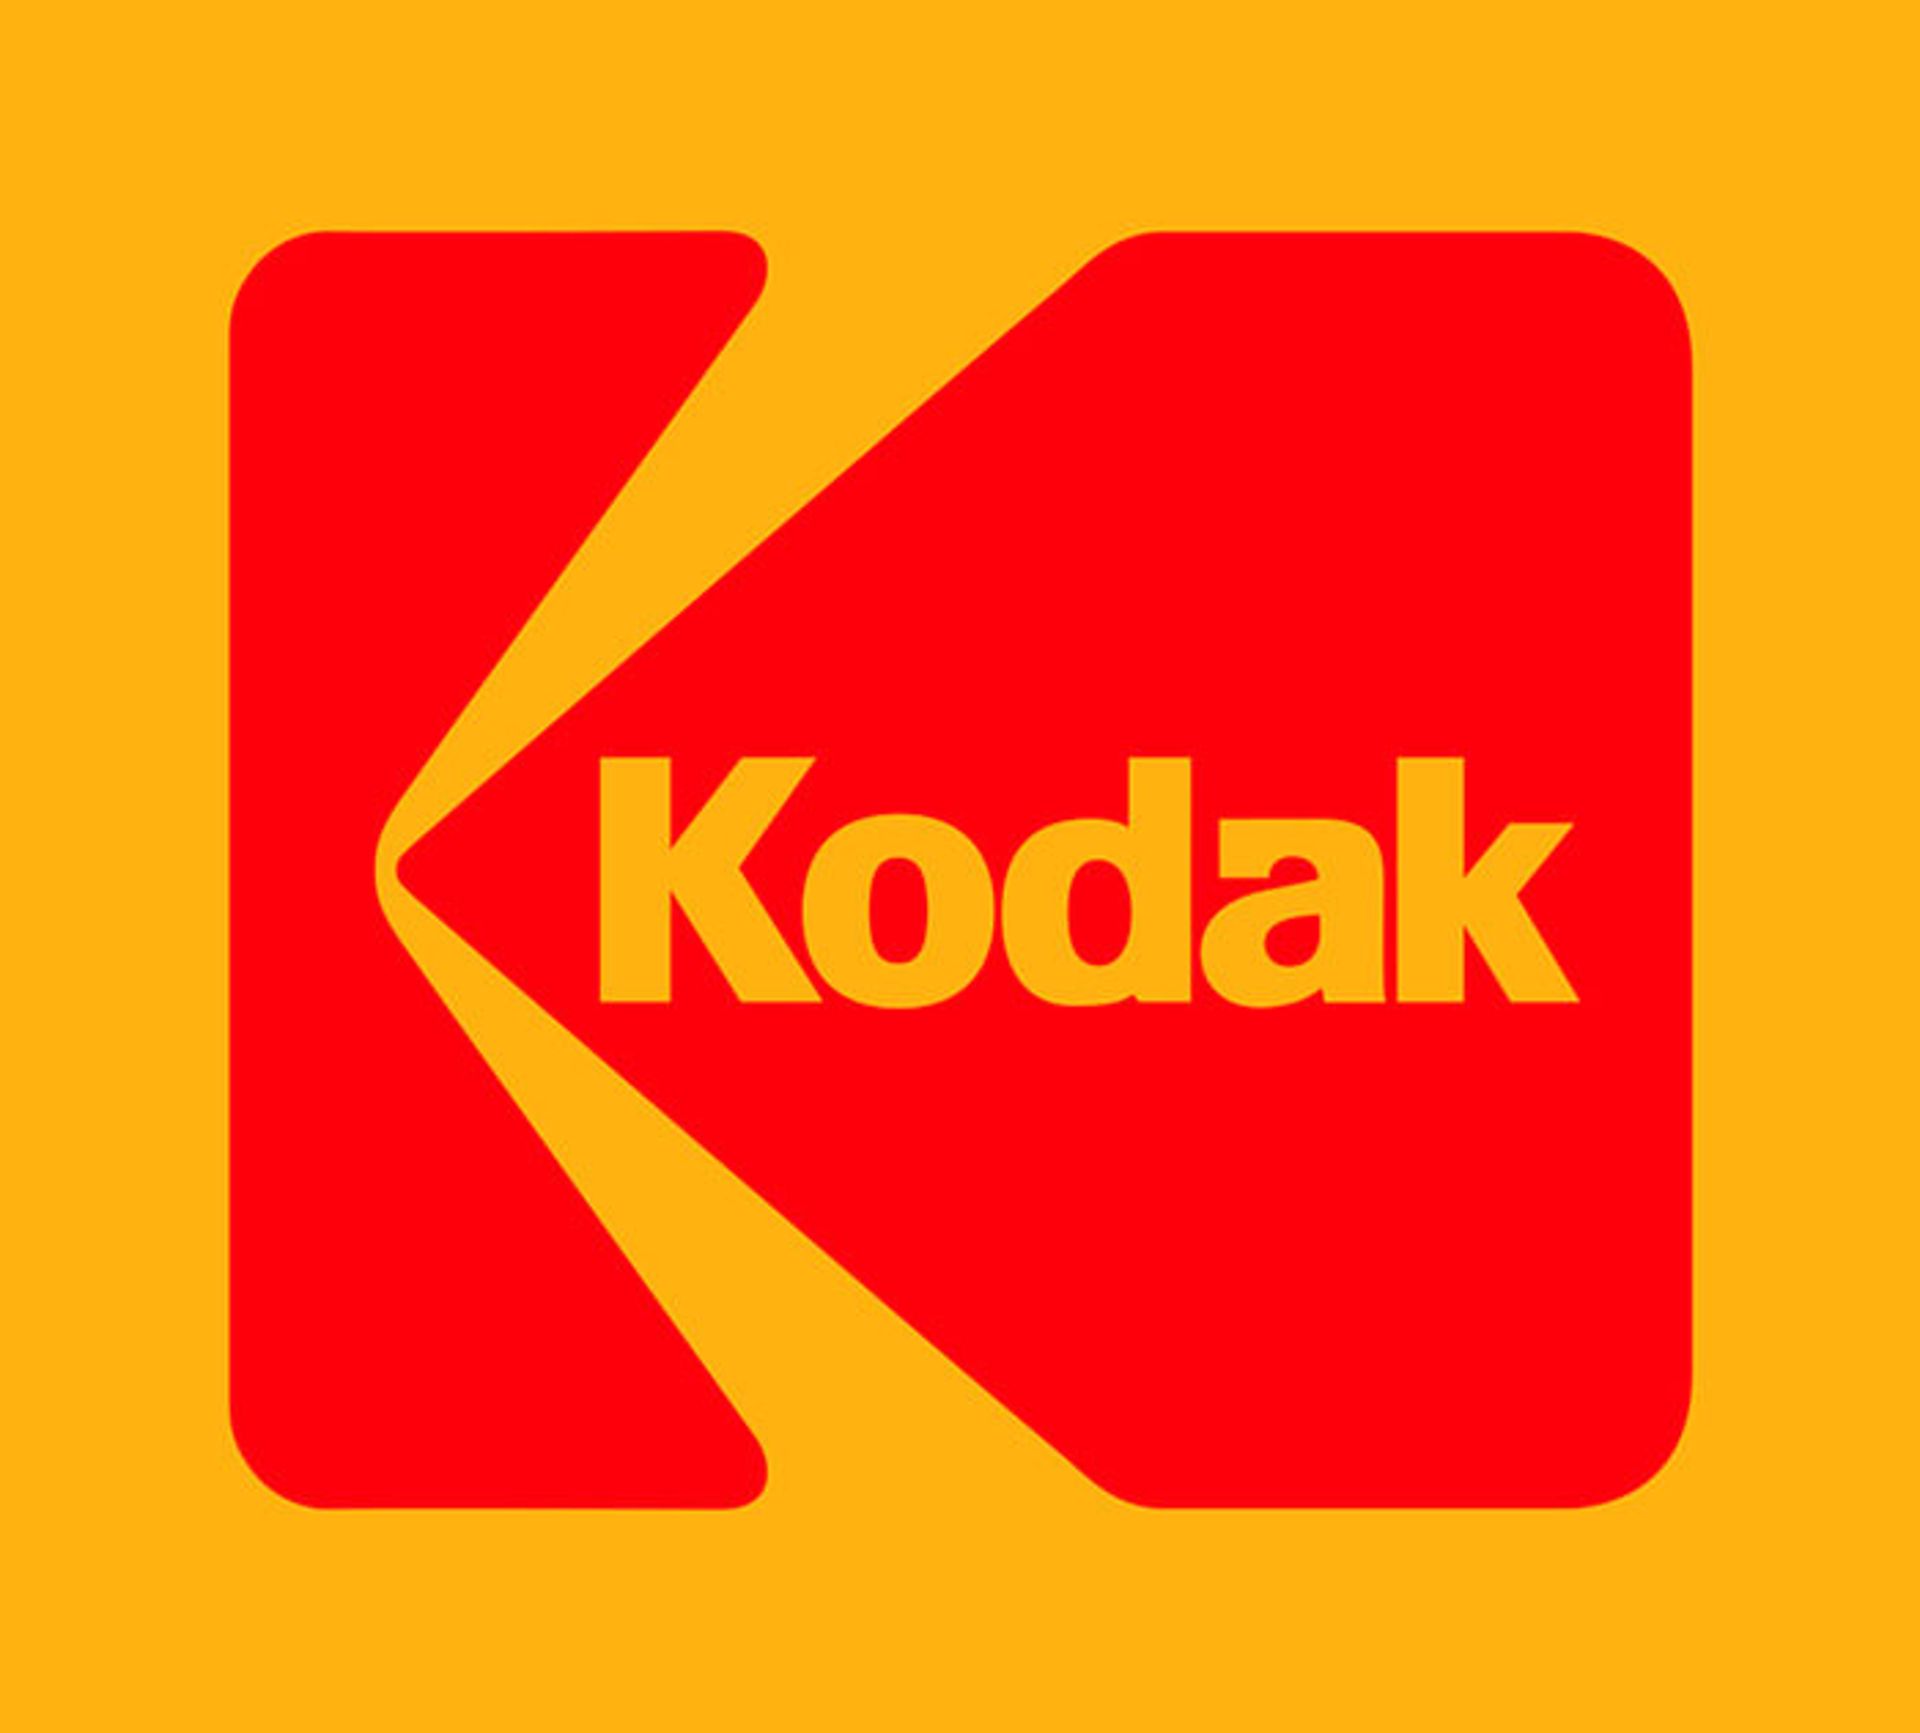 مرجع متخصصين ايران كداك / Kodak